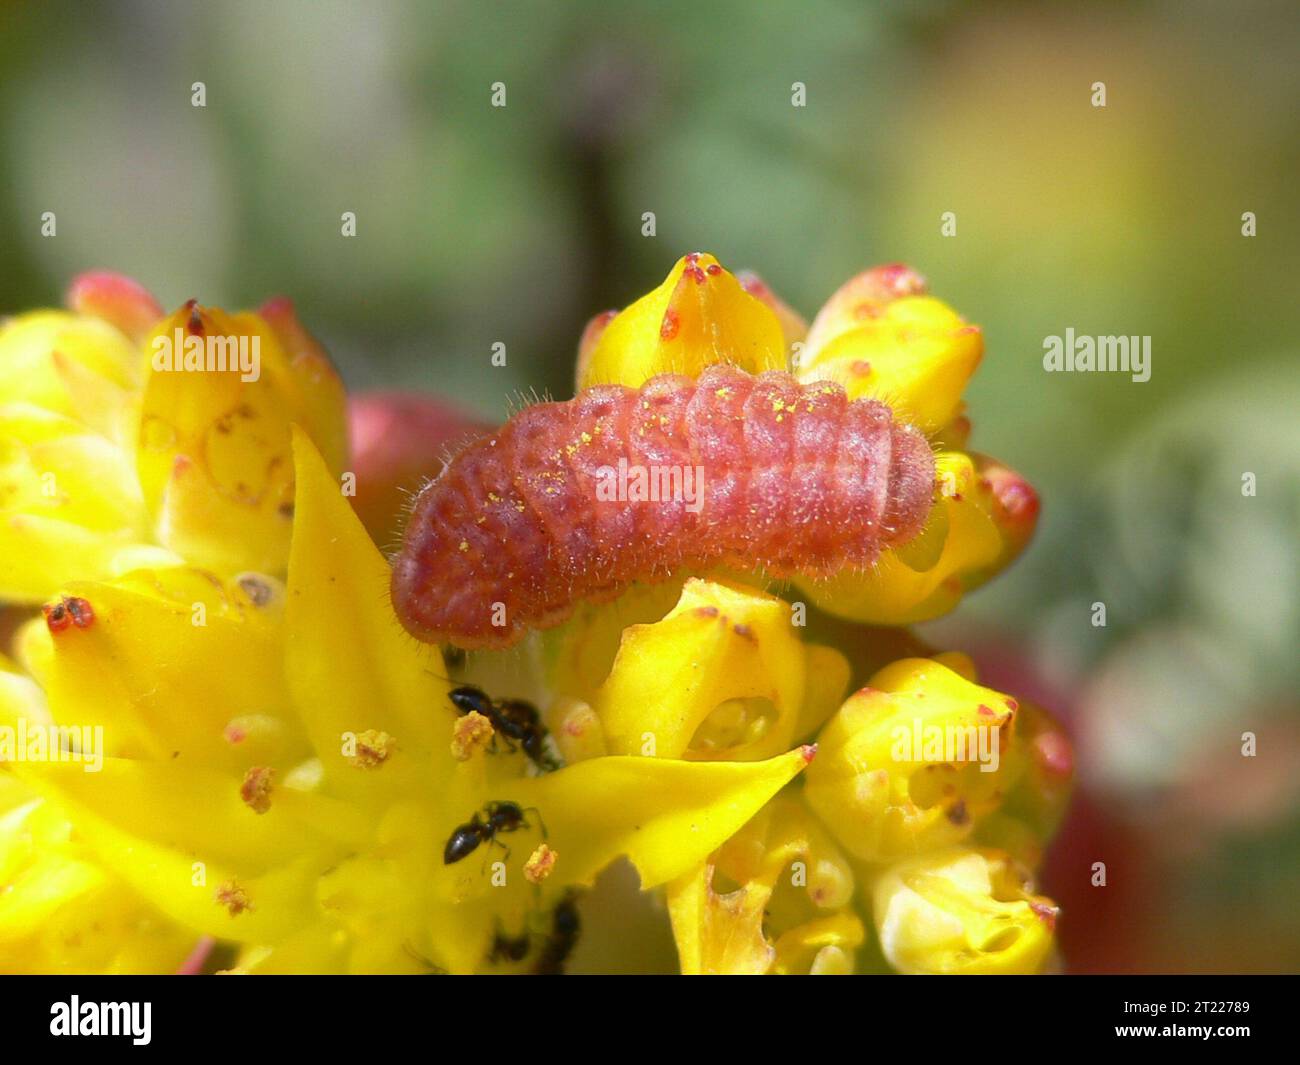 Una larva de San Bruno Elfin coexiste armoniosamente con las hormigas en su planta huésped, stonecrop (Sedum spathulifolium). Materias: Insectos; Especies en peligro de extinción; Plantas. Ubicación: California. Foto de stock